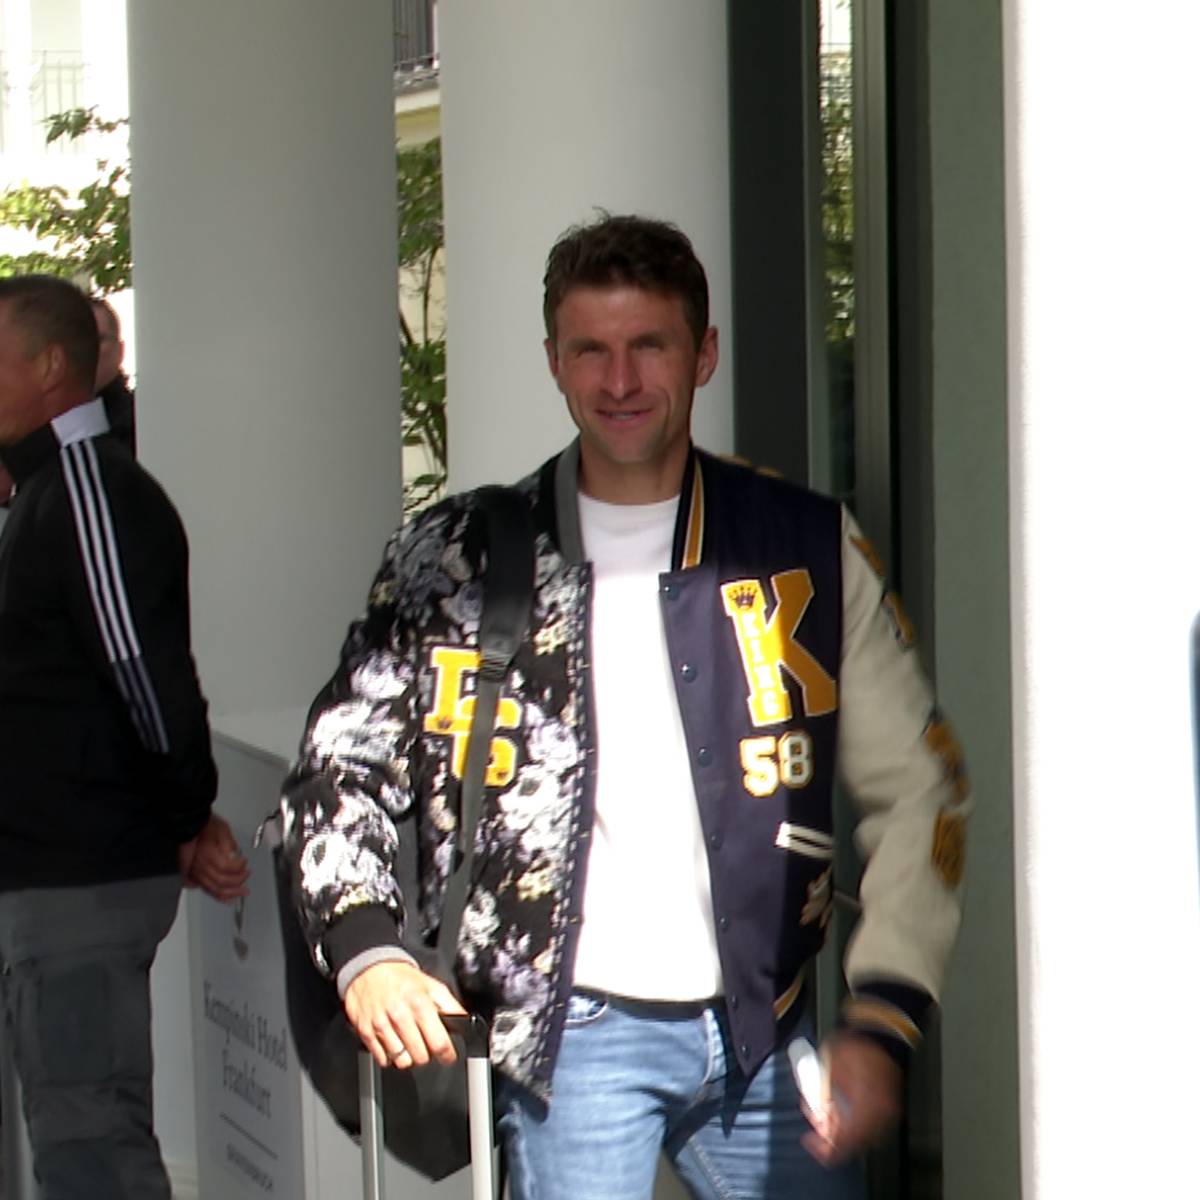 Kurioser Look! Müller sorgt bei DFB-Ankunft für Aufsehen